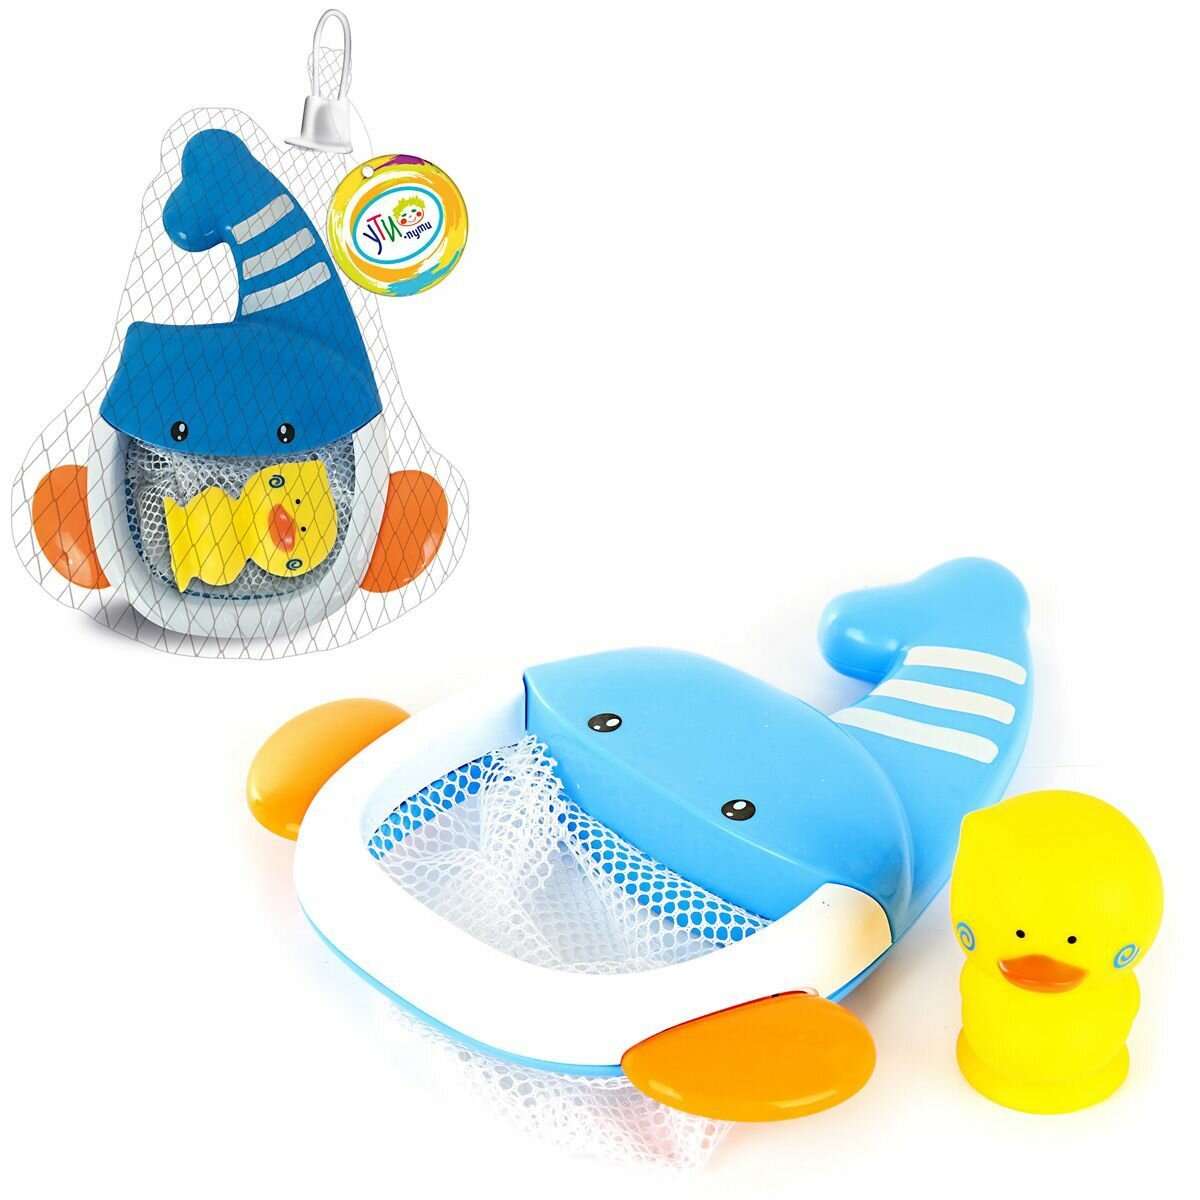 Игрушка для купания, сачок кит-сетка, Ути Пути / Детская мельница для купания / Развивающая игрушка для малышей